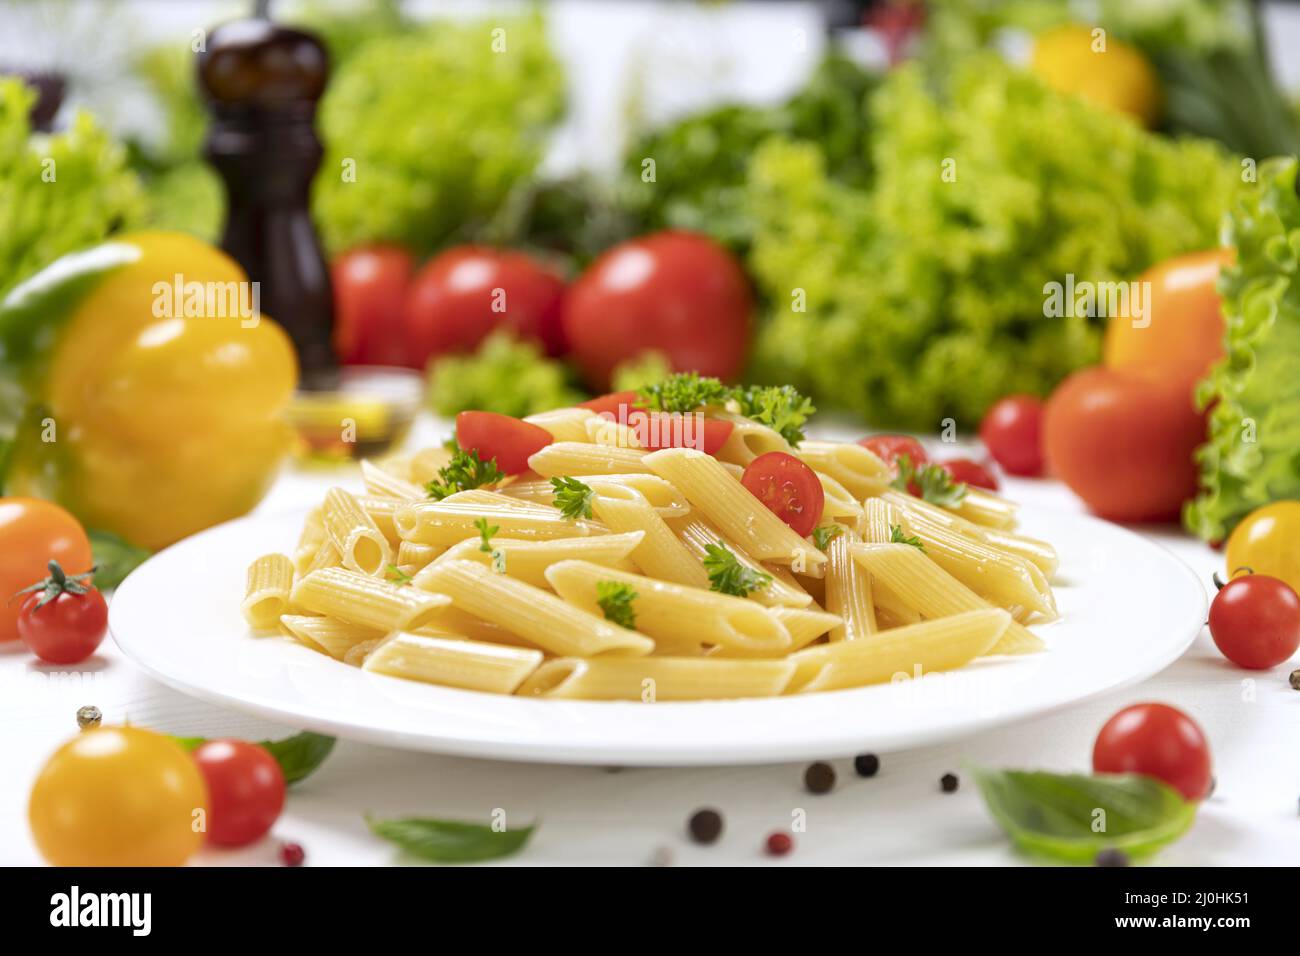 Assiette de pâtes italiennes, penne rigate avec tomates et basilic Banque D'Images